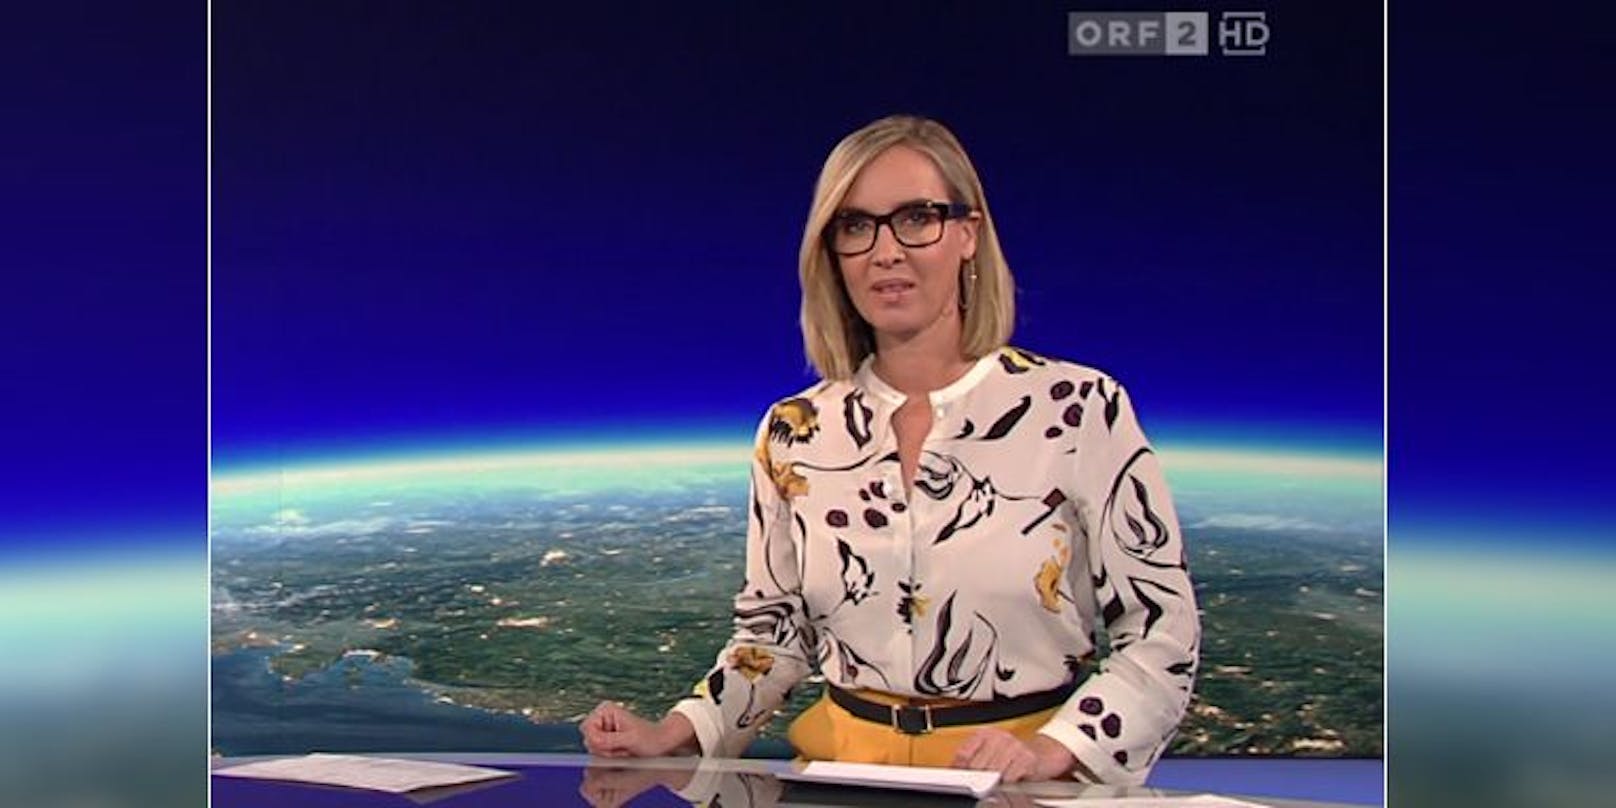 ZiB-Star Bernhard begeistert ORF-Zuseher mit Outfit